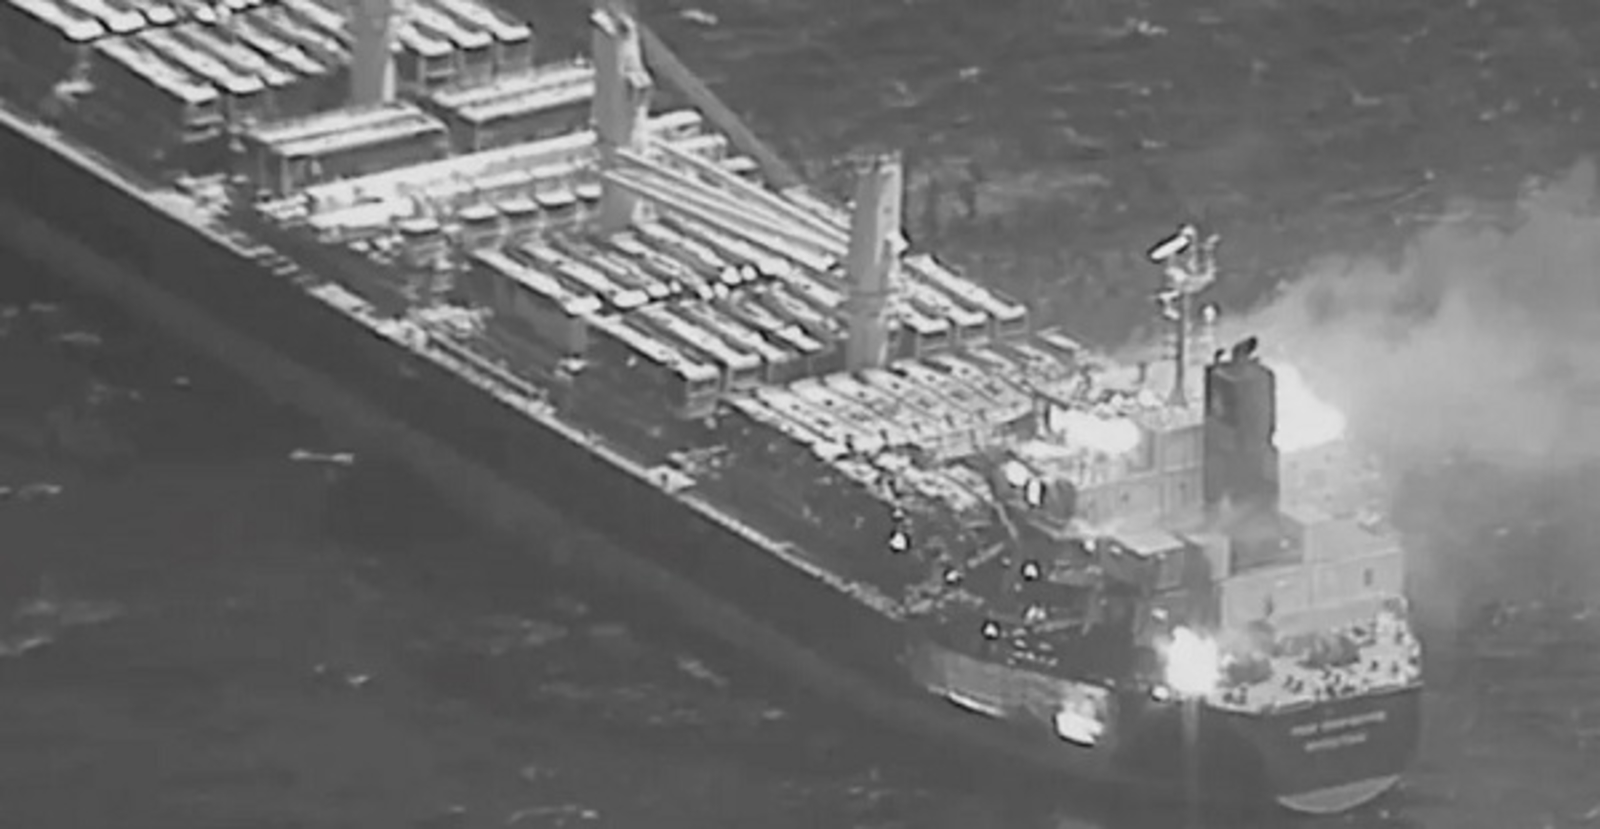 أمبري: بلاغ عن انفجارين قرب سفينة تجارية على بعد 21 ميلا بحريا غربي المخا